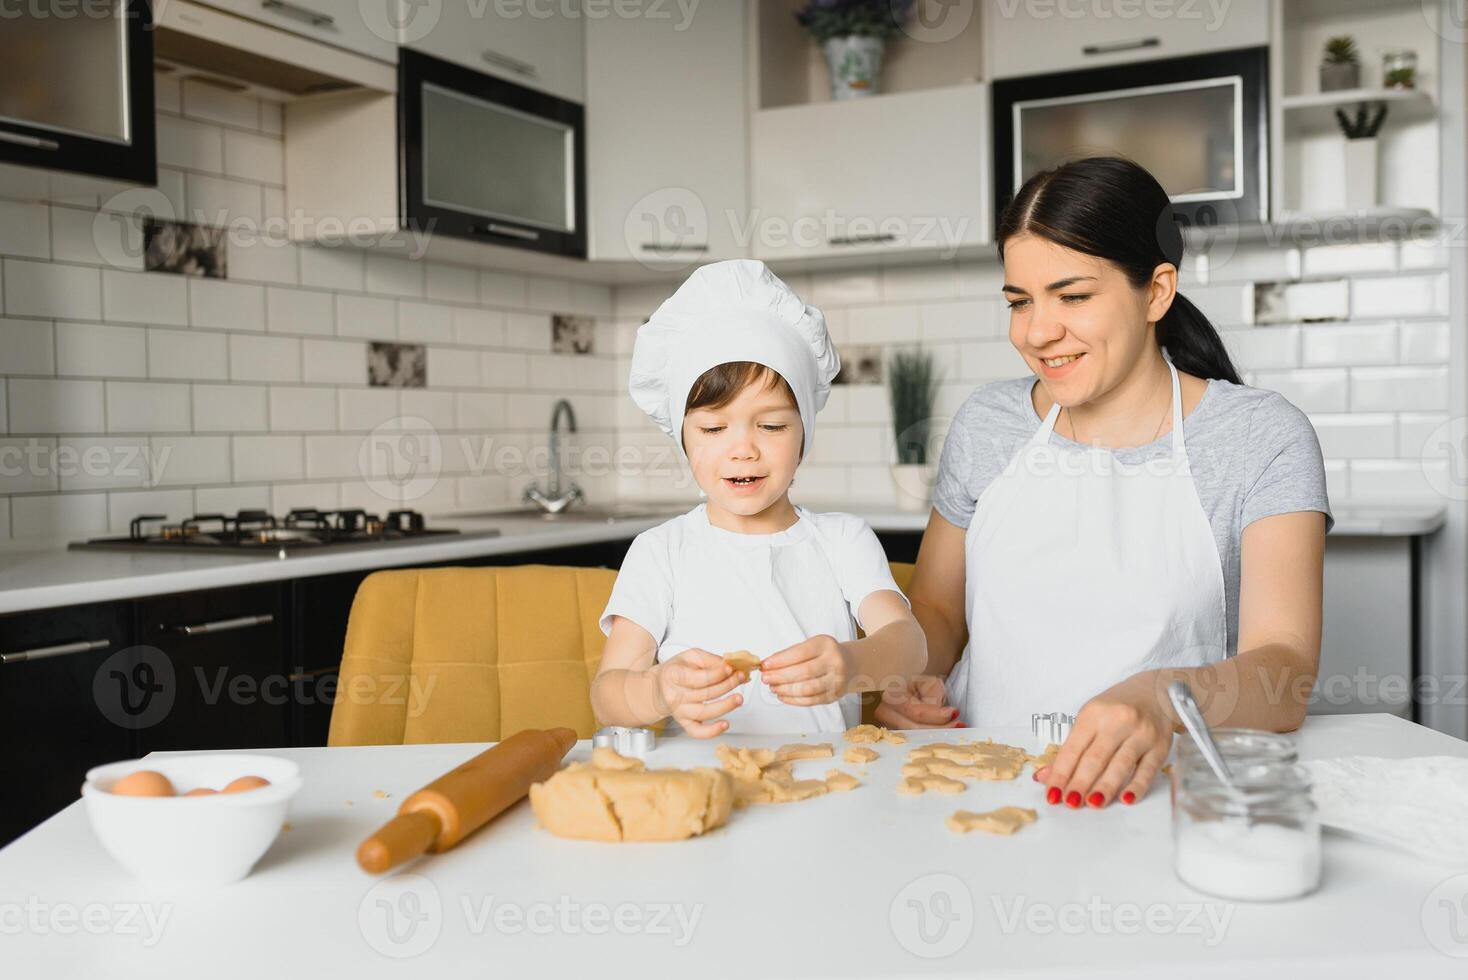 contento madre y pequeño hijo en el cocina, contento hora y unión foto